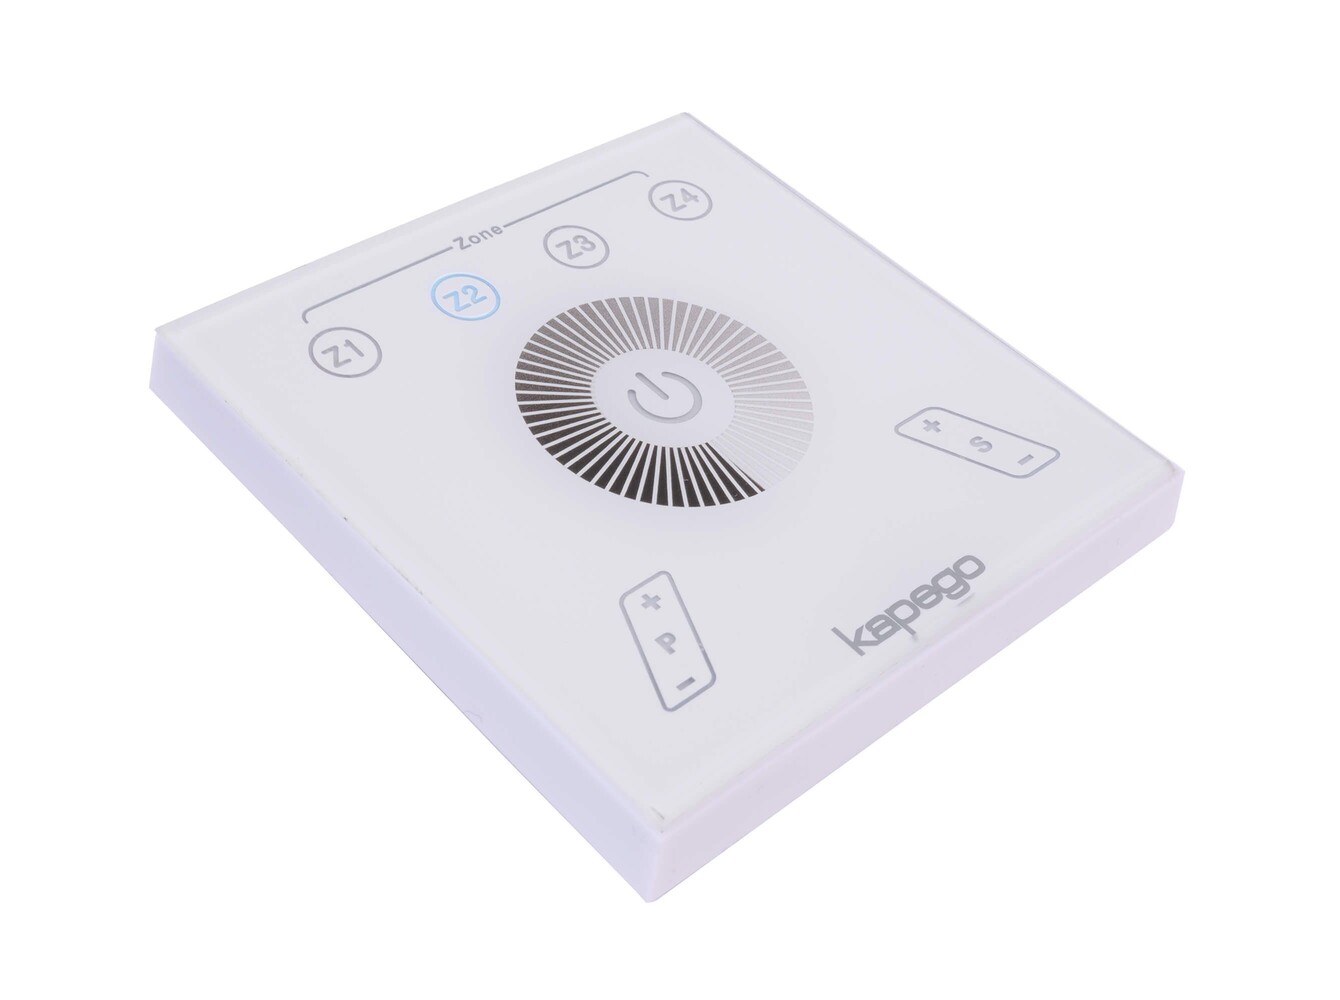 Hochwertiger Deko-Light Controller mit Touchpanel-Feature und Energieeffizienter Funktionalität